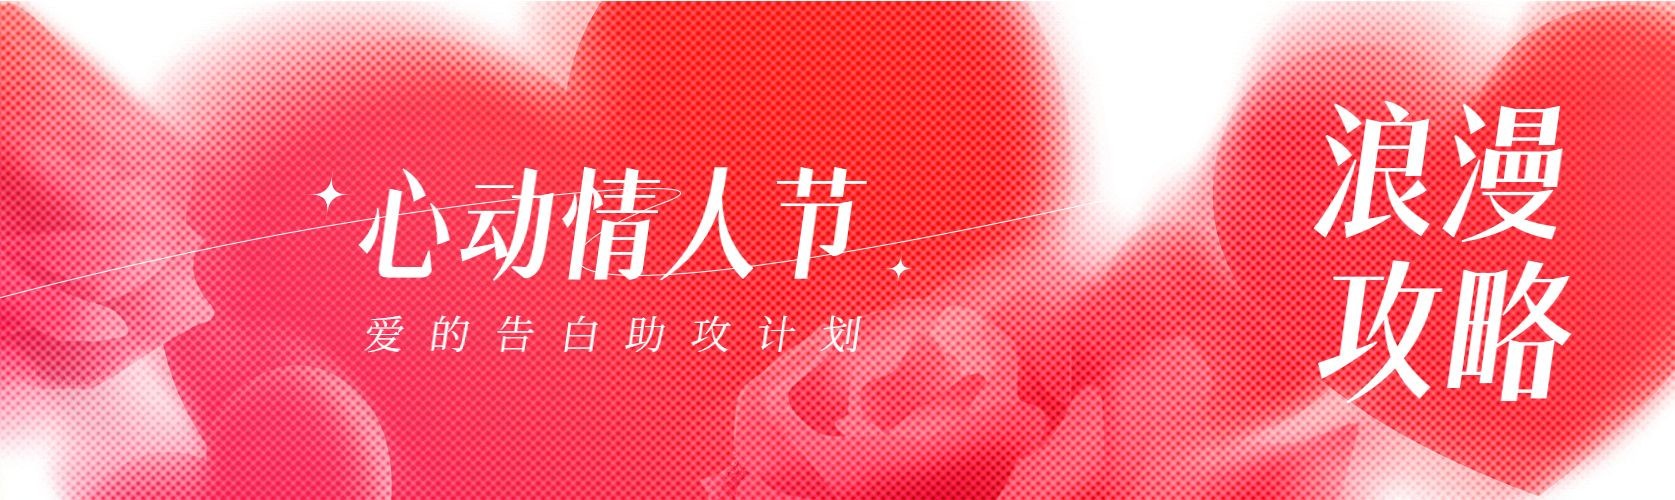 情人节节日祝福半调网格公众号首次图预览效果